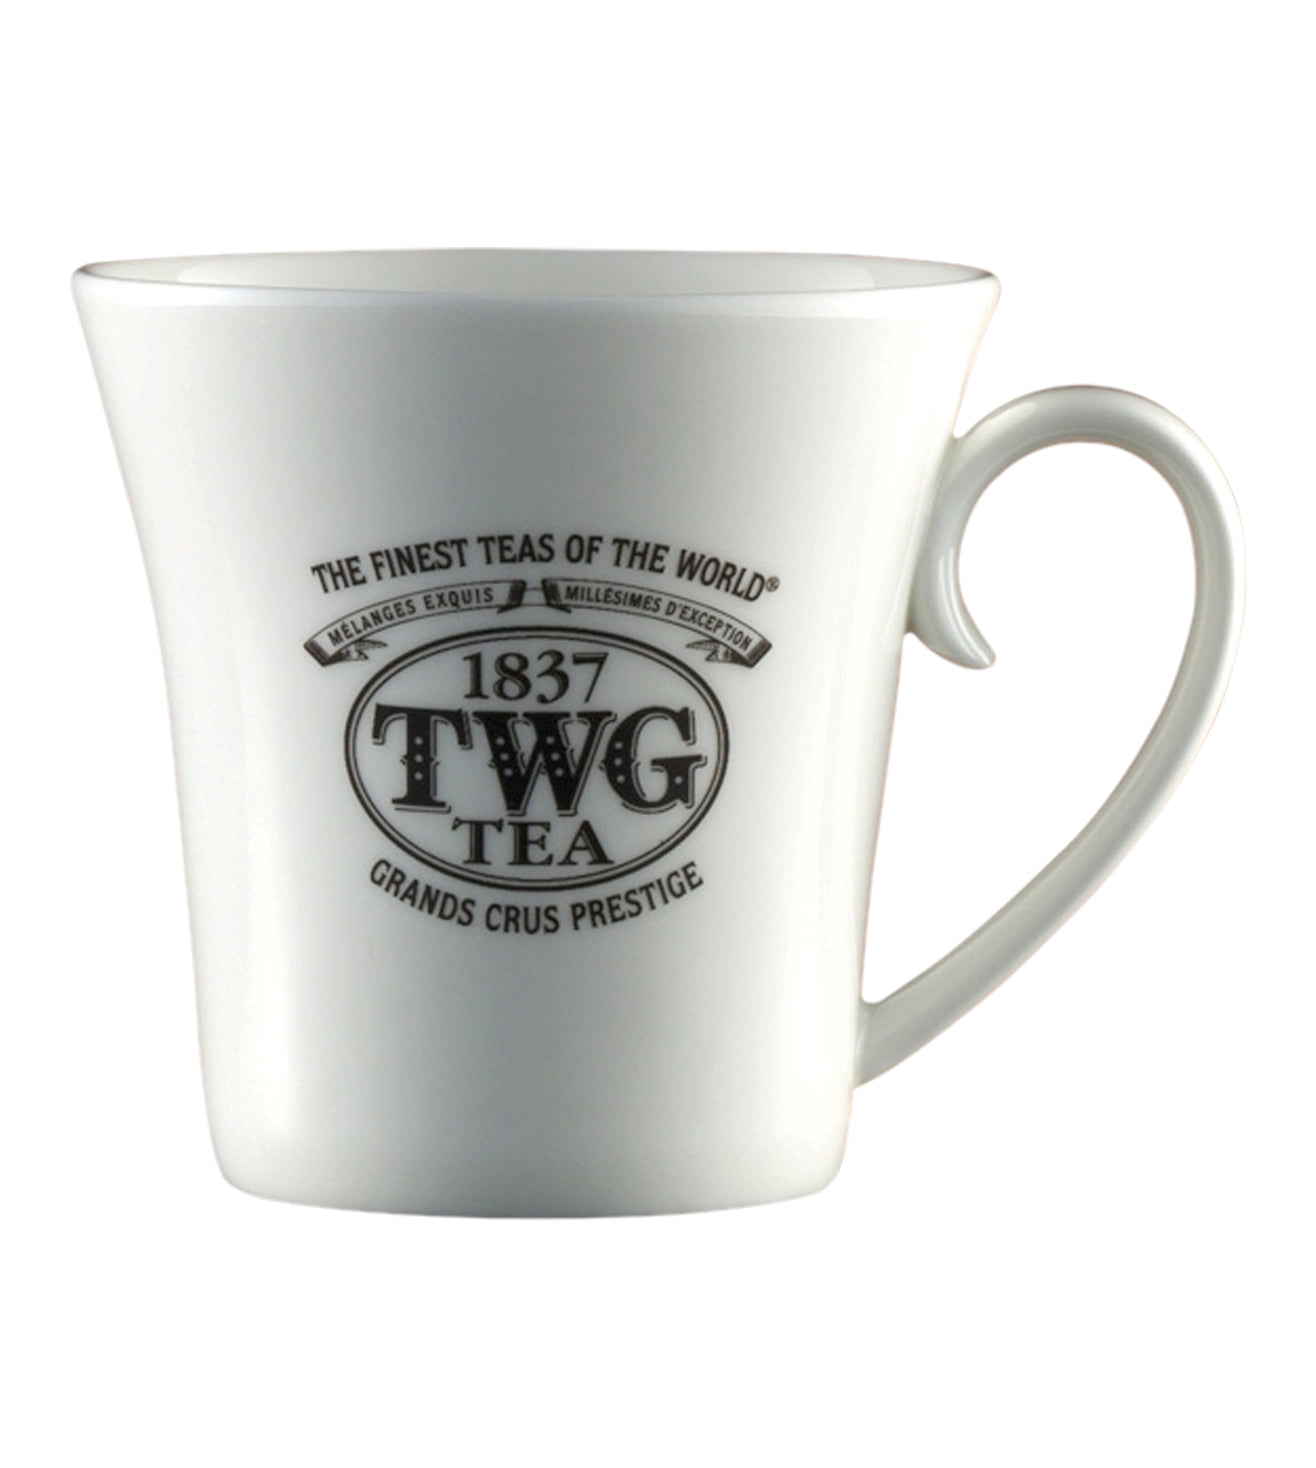 TWG Tea Mug